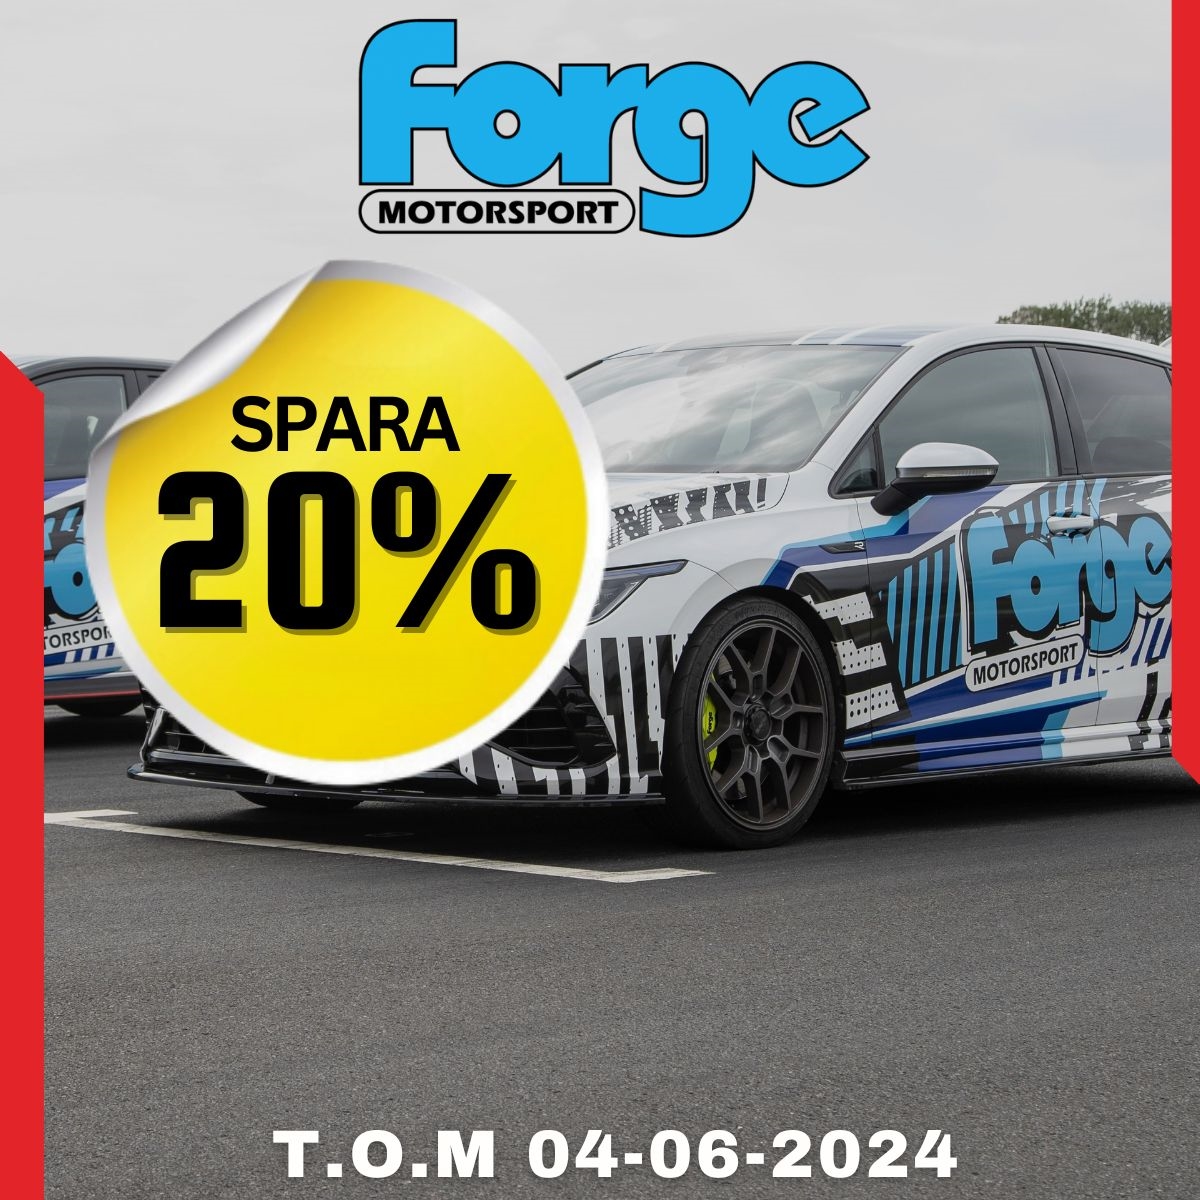 Forge Motorsport spara 20% på Nardocar.se